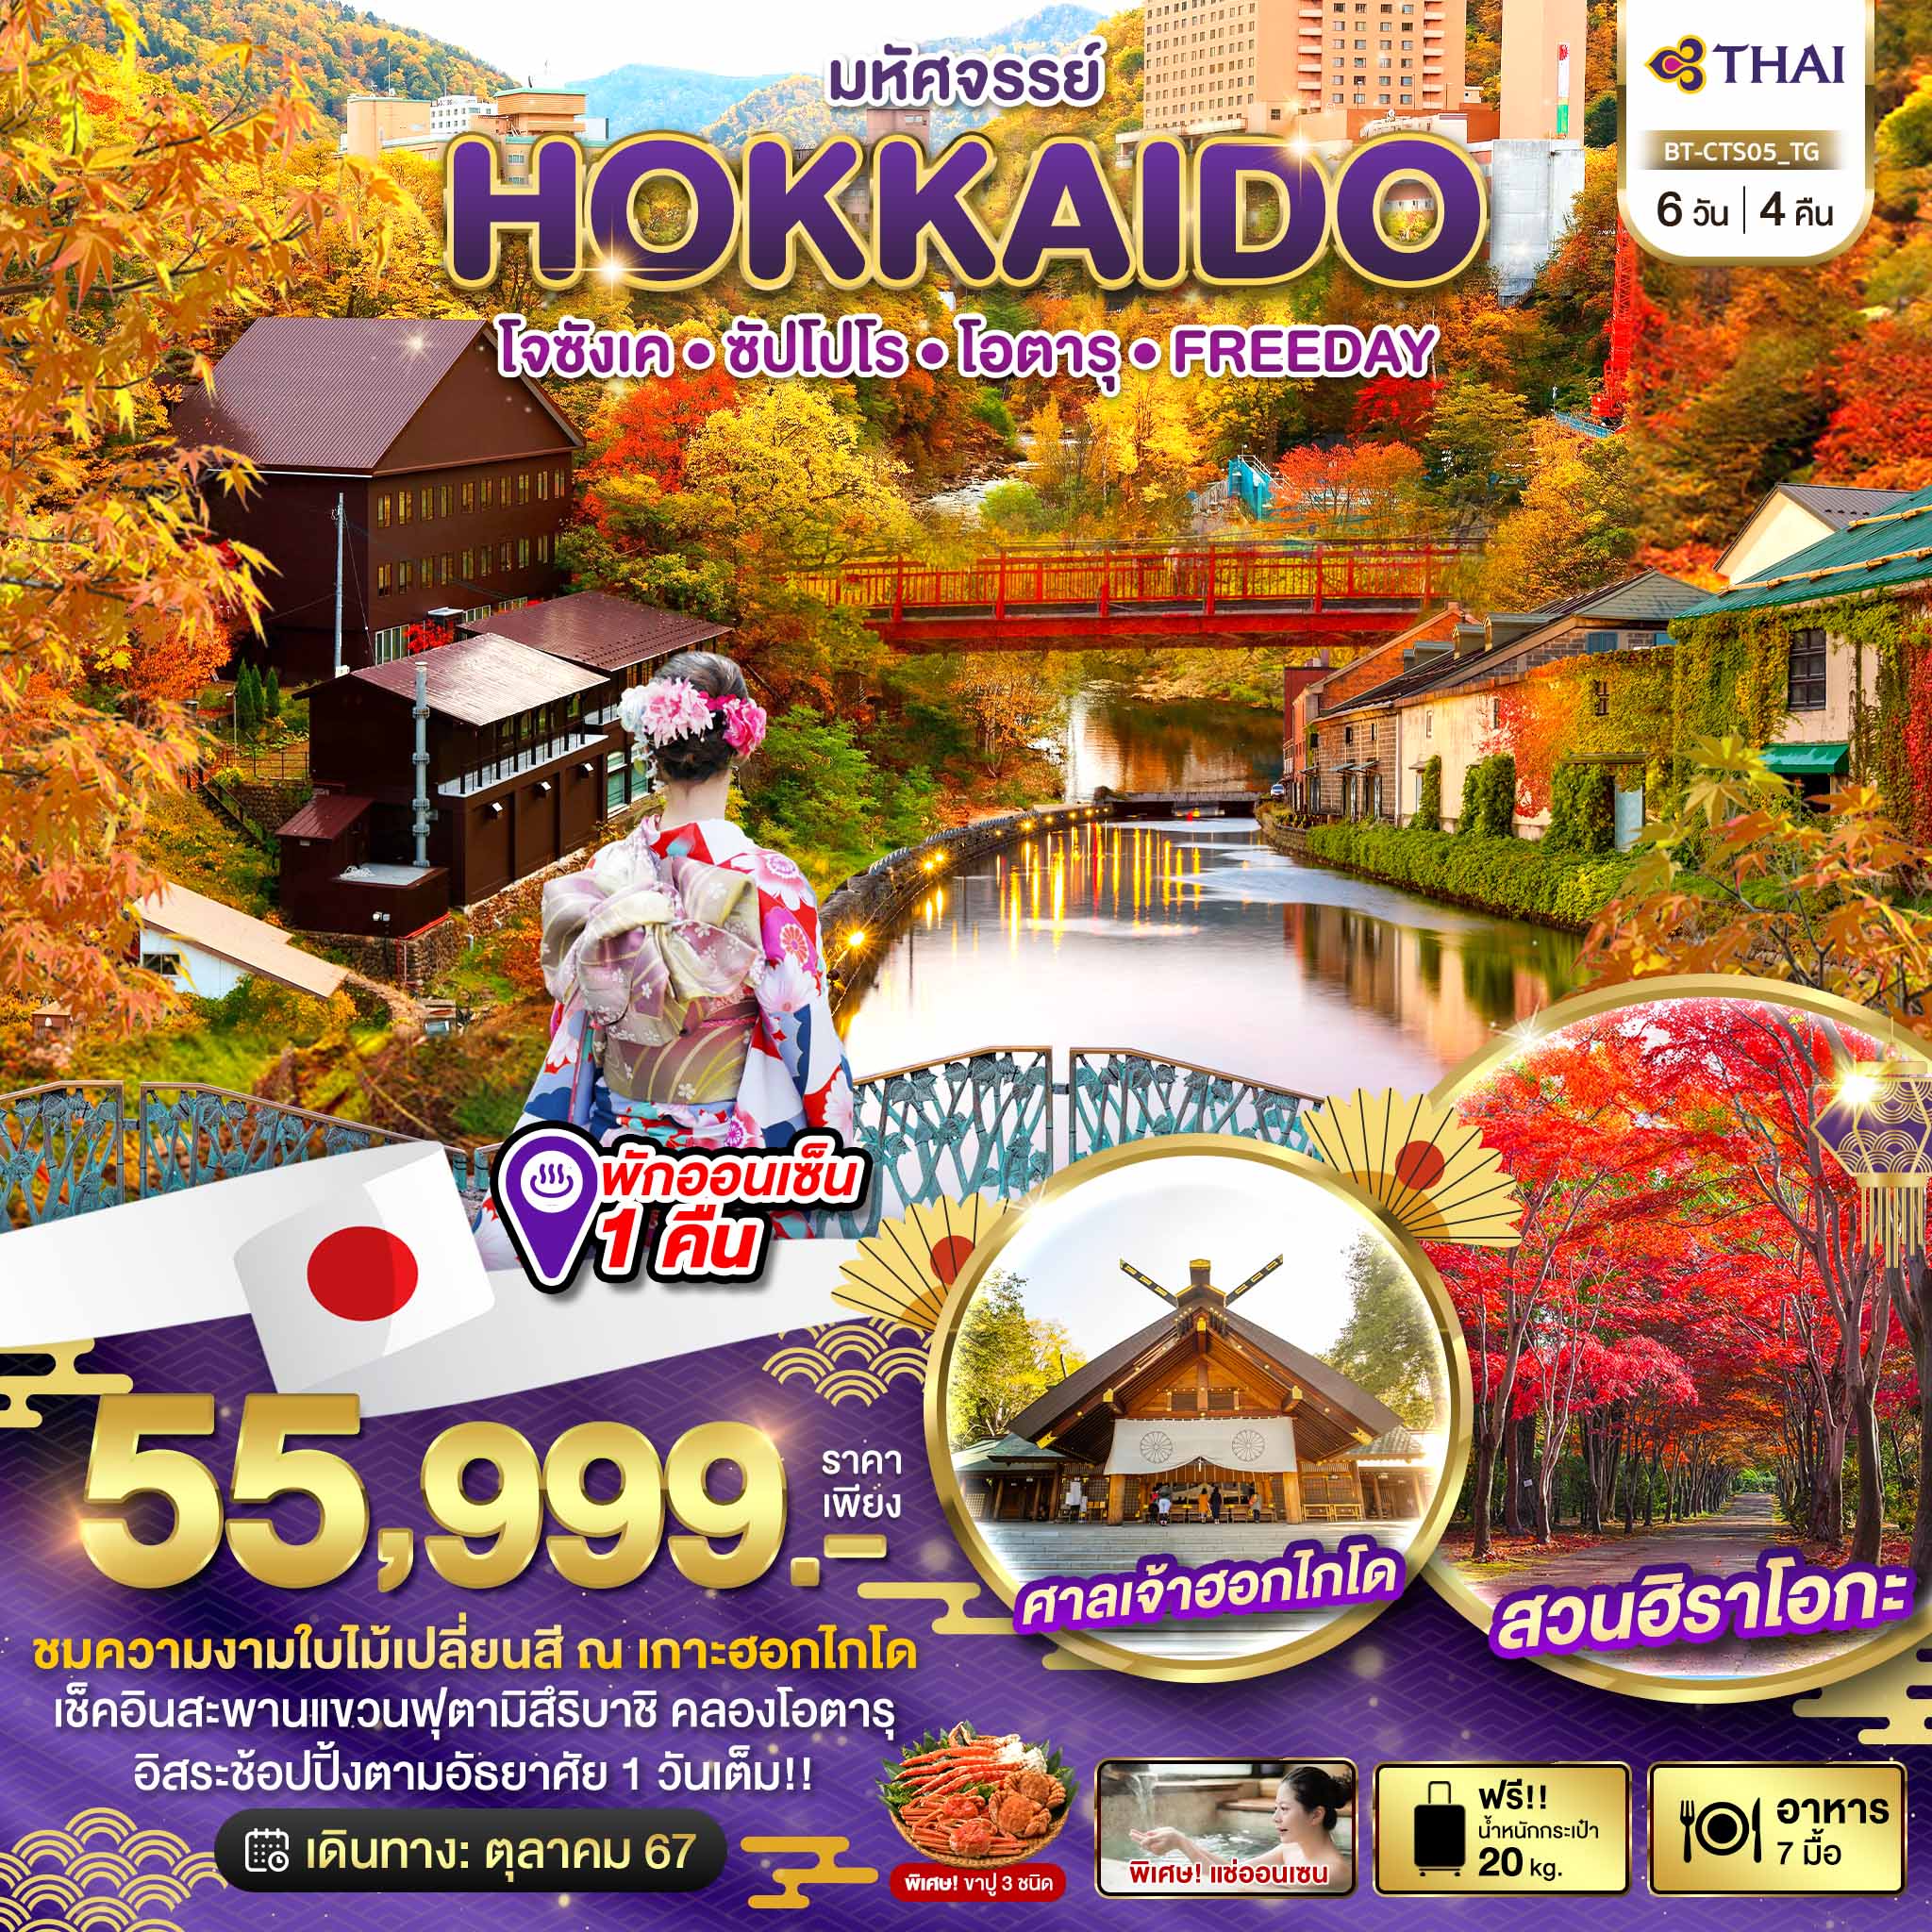 ทัวร์ญี่ปุ่น มหัศจรรย์ HOKKAIDO โจซังเค ซัปโปโร โอตารุ FREEDAY 6วัน 4คืน (TG)